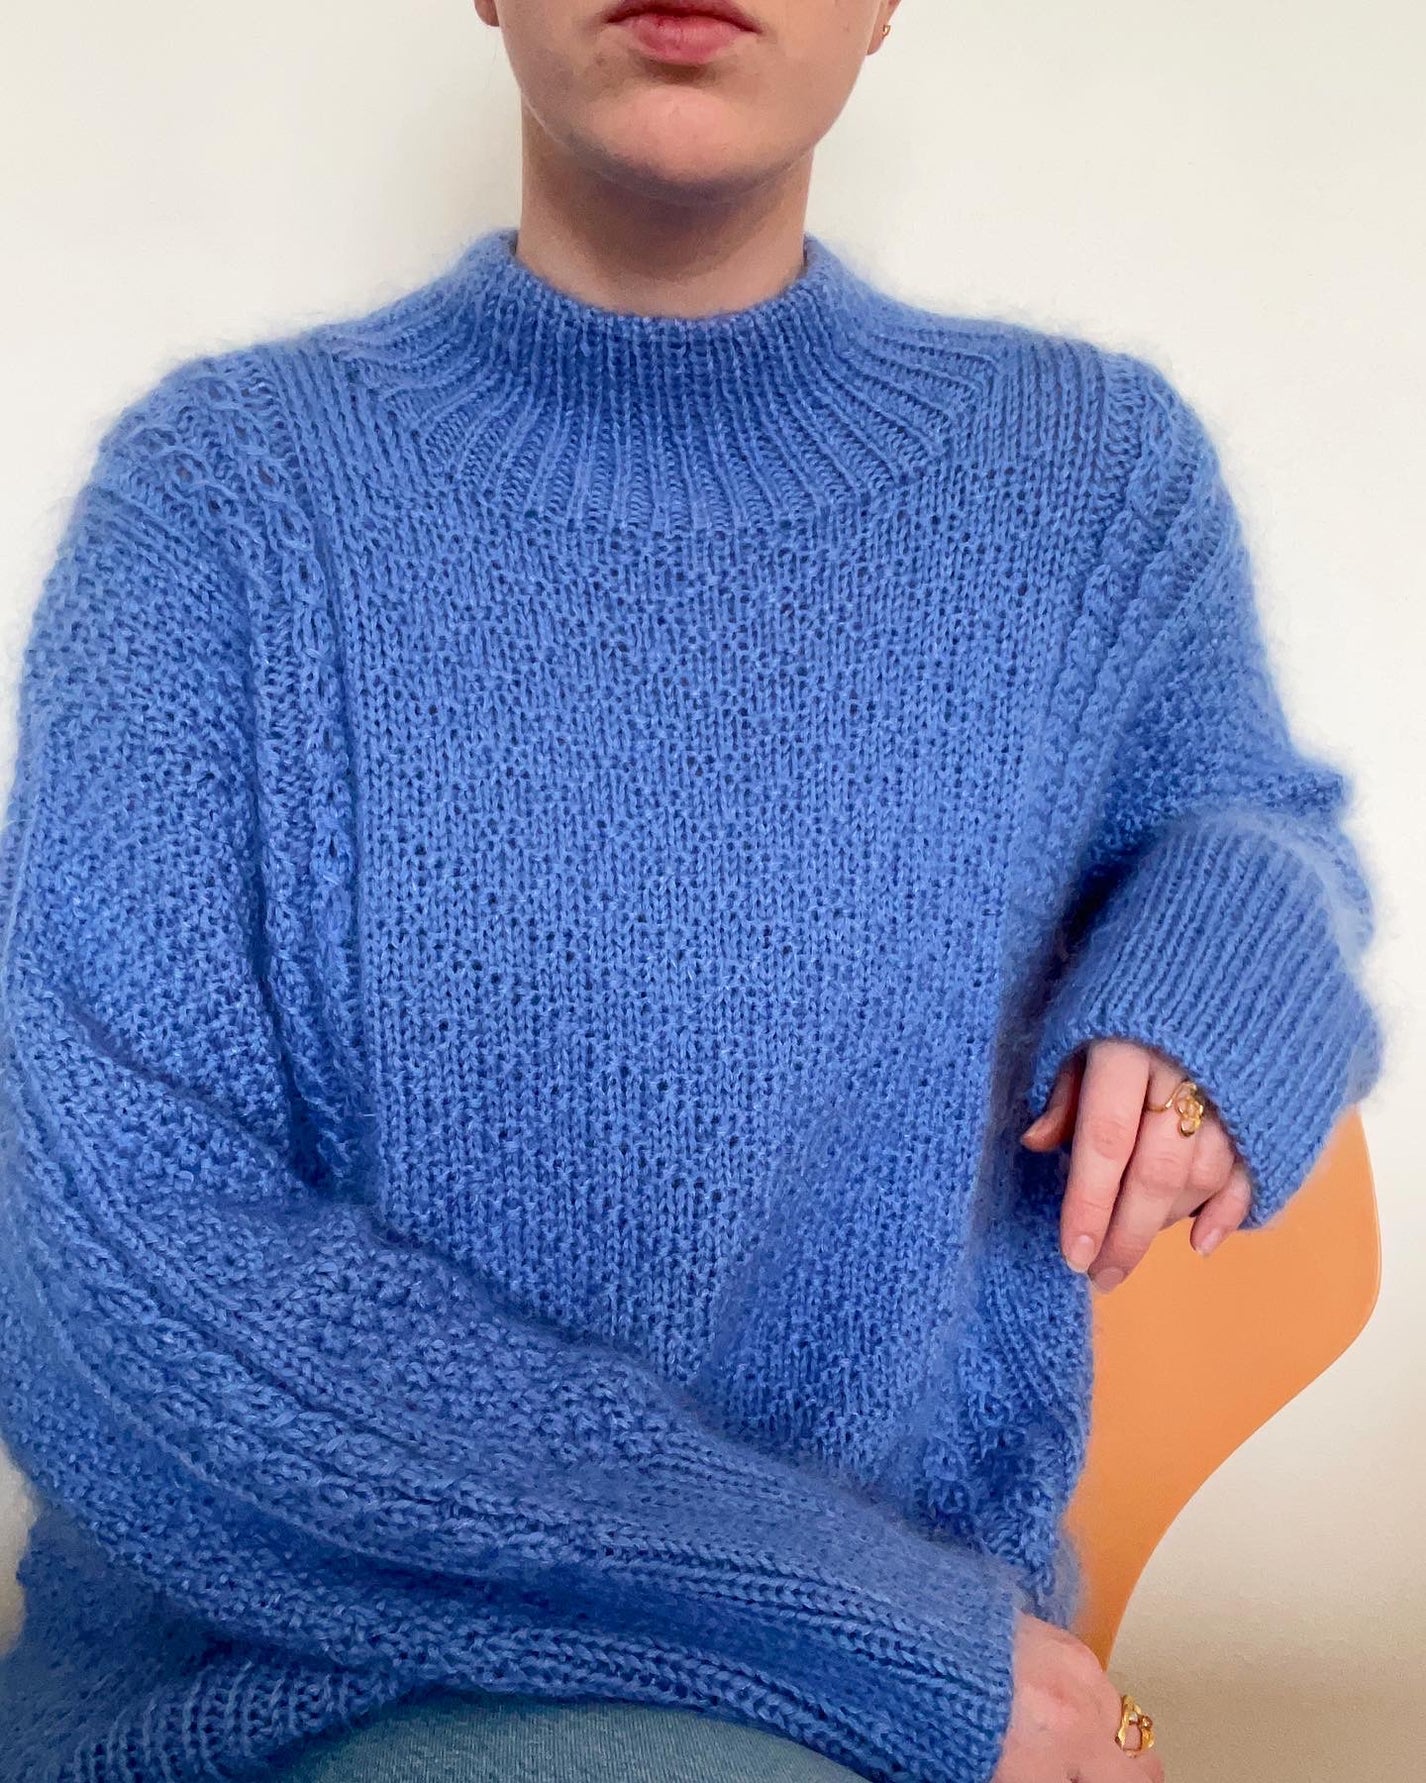 Diamond Structure Sweater Dansk – easy as knit